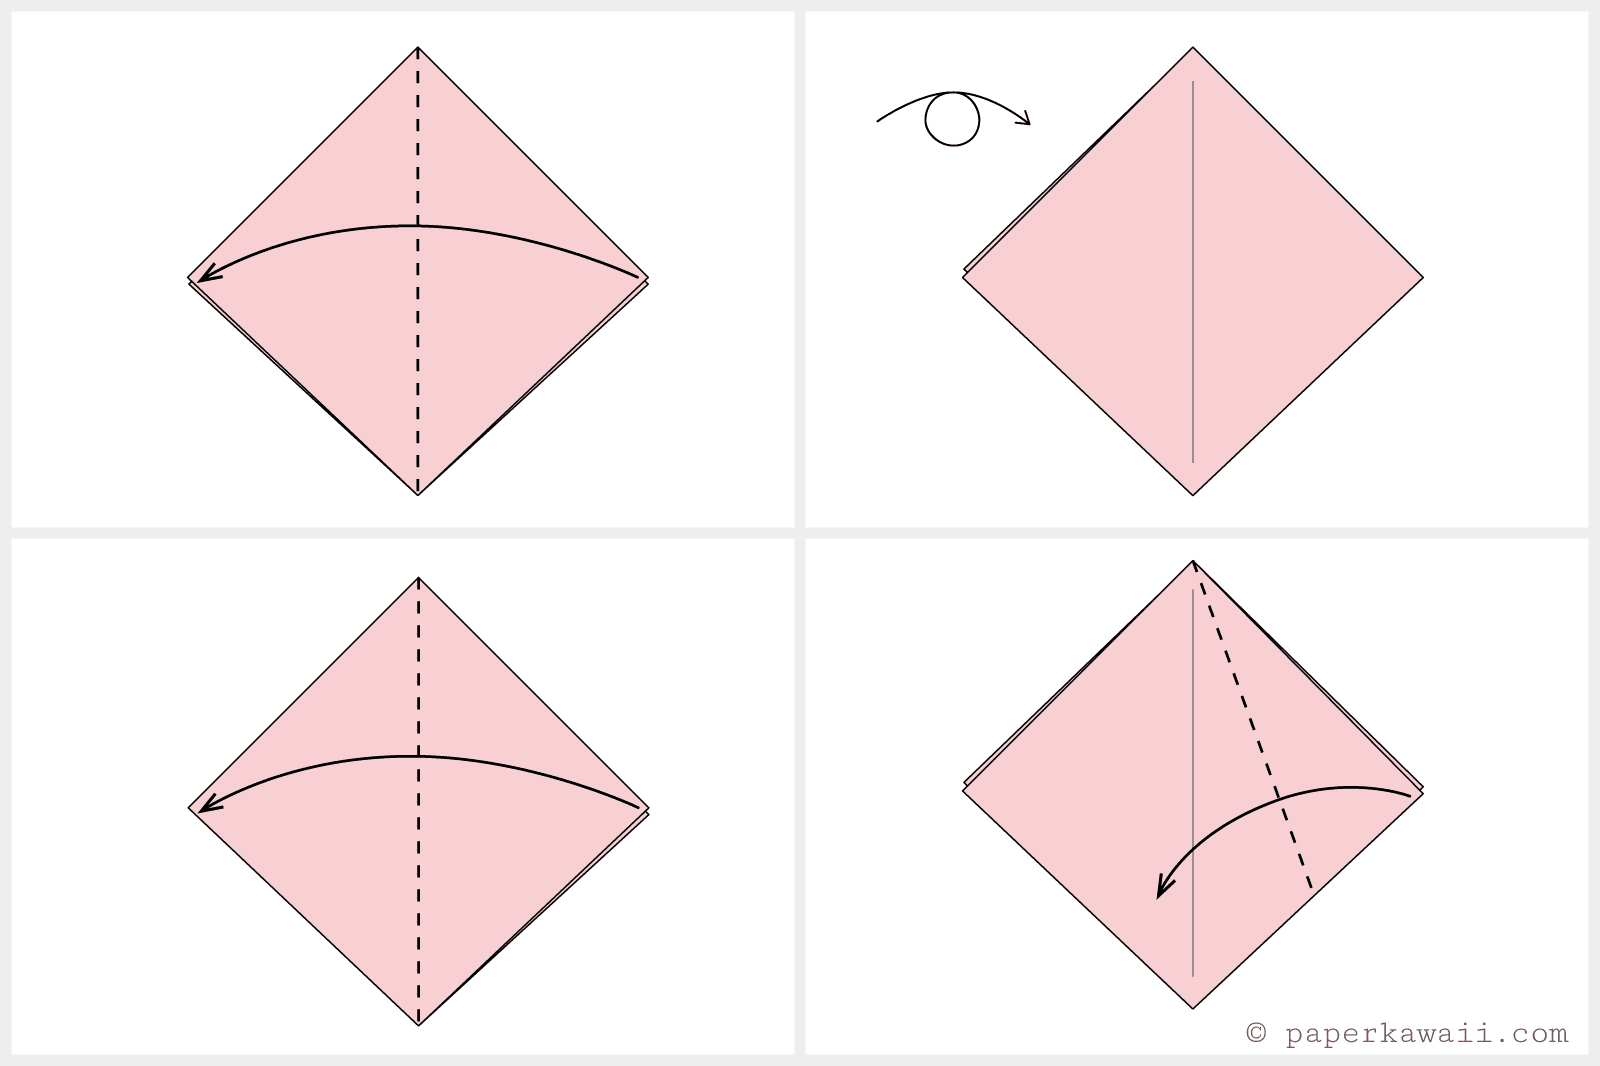 Как сделать тюльпан из бумаги поэтапно. Оригами тюльпан пошагово для начинающих. Как делать тюльпаны из бумаги поэтапно. Тюльпан оригами схема пошаговая. Схема тюльпана оригами из бумаги пошаговая.